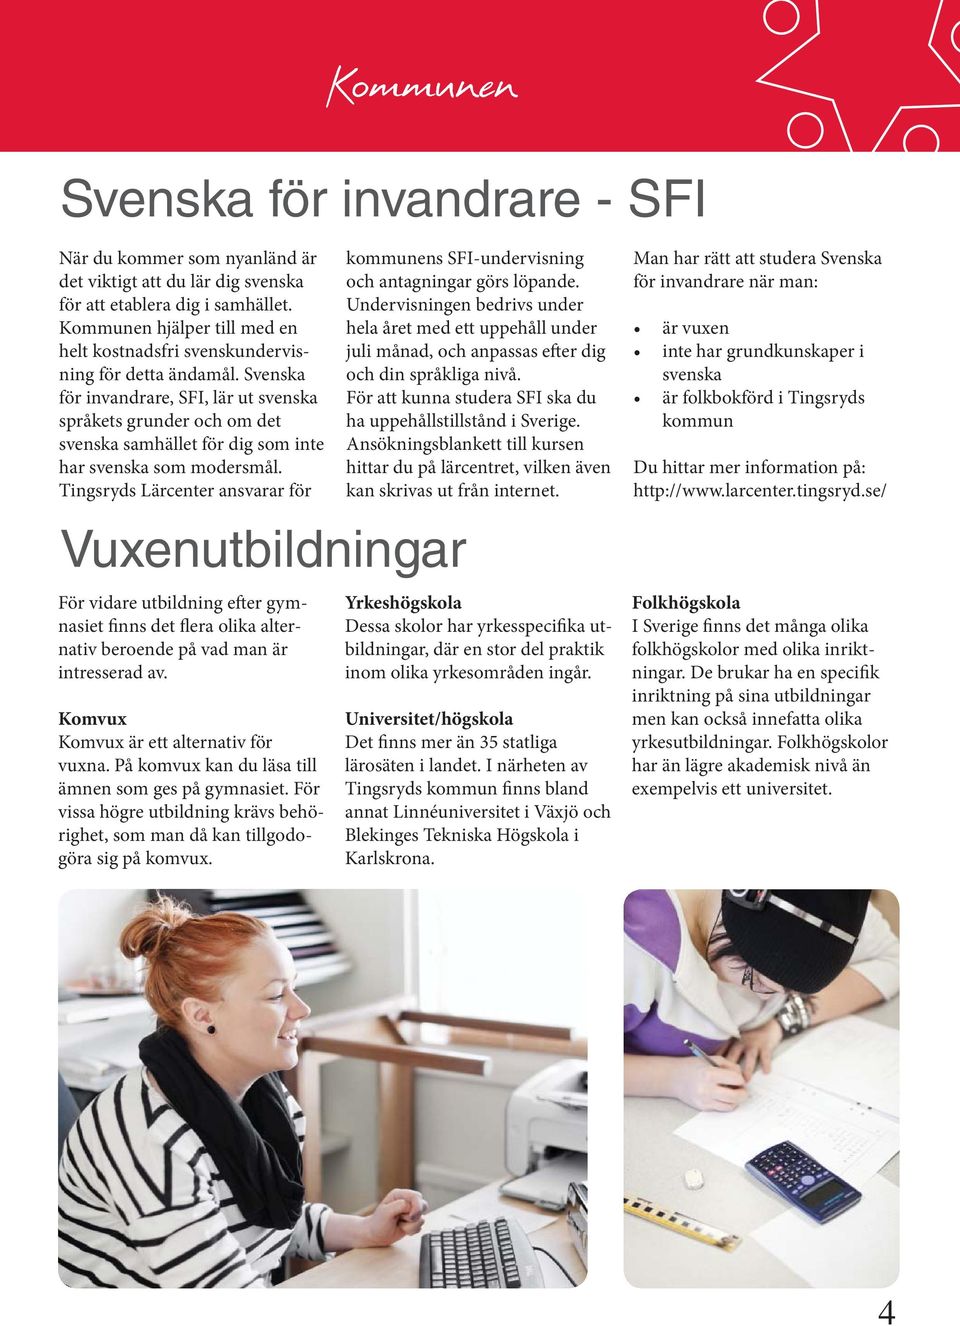 Svenska för invandrare, SFI, lär ut svenska språkets grunder och om det svenska samhället för dig som inte har svenska som modersmål.